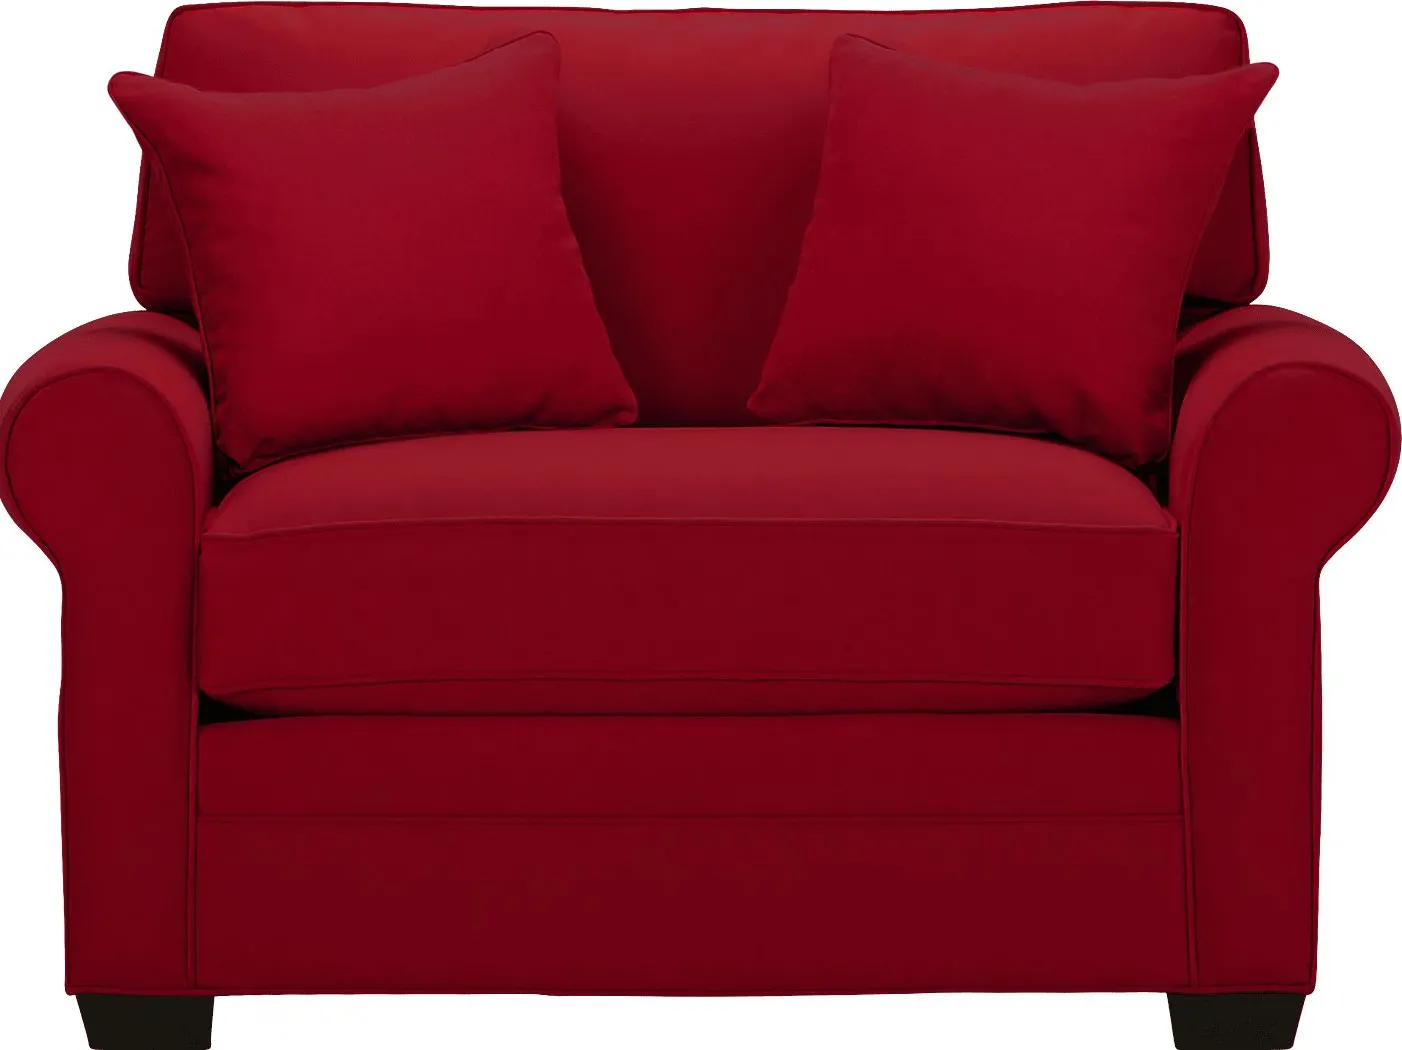 Bellingham Cardinal Microfiber Sleeper Chair